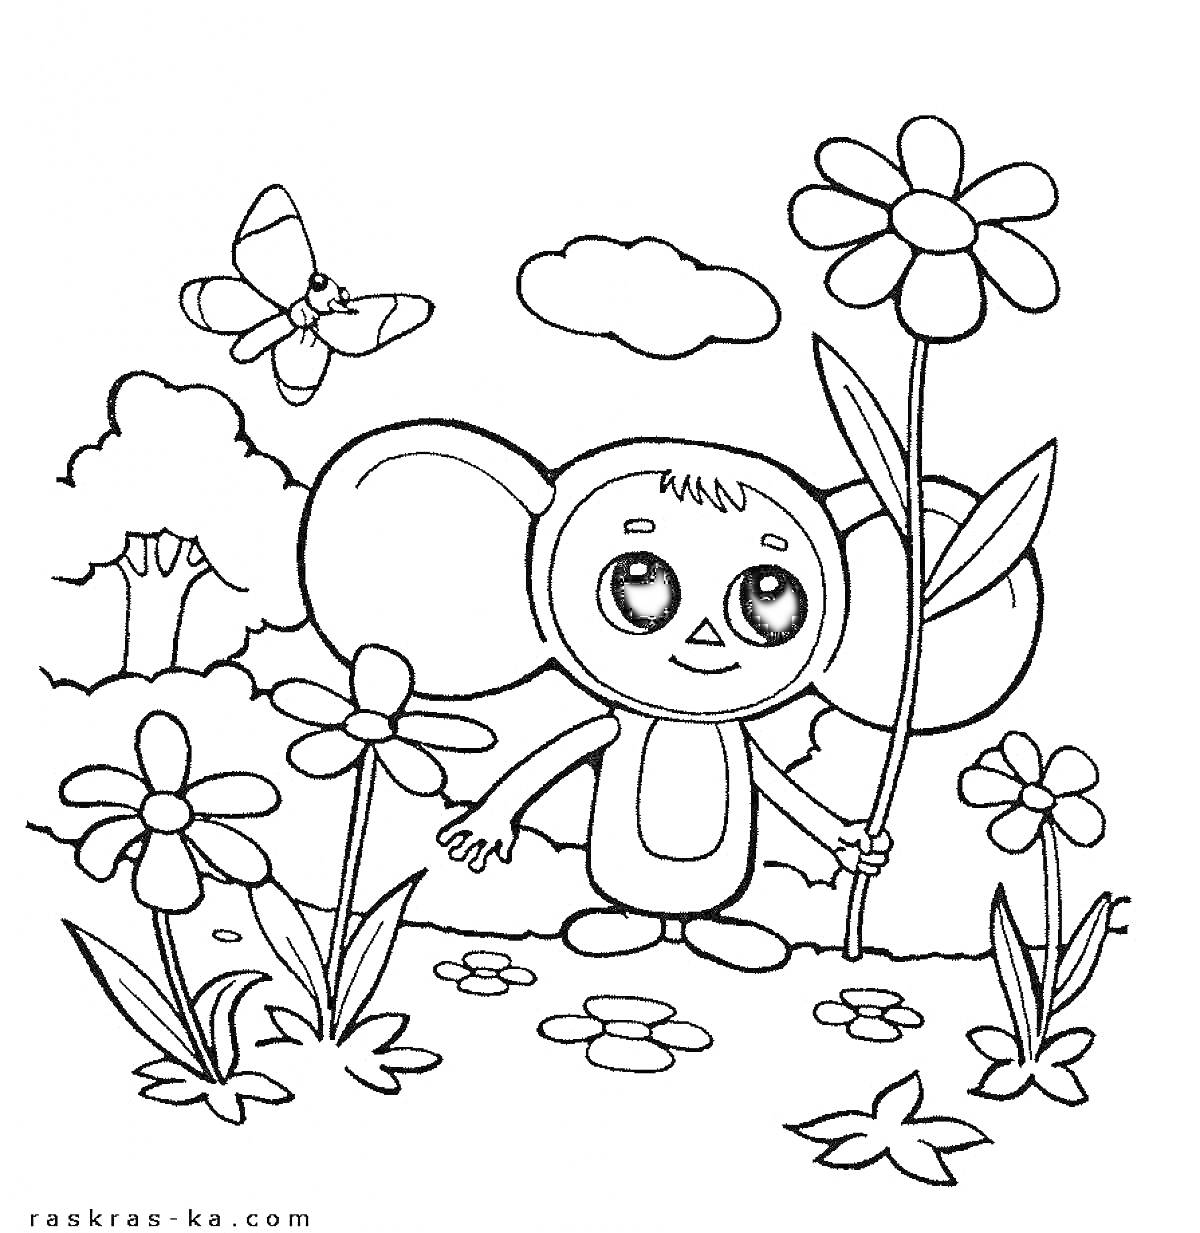 Чебурашка держит цветок и стоит среди цветов, вокруг цветы, летает бабочка, на заднем плане кусты